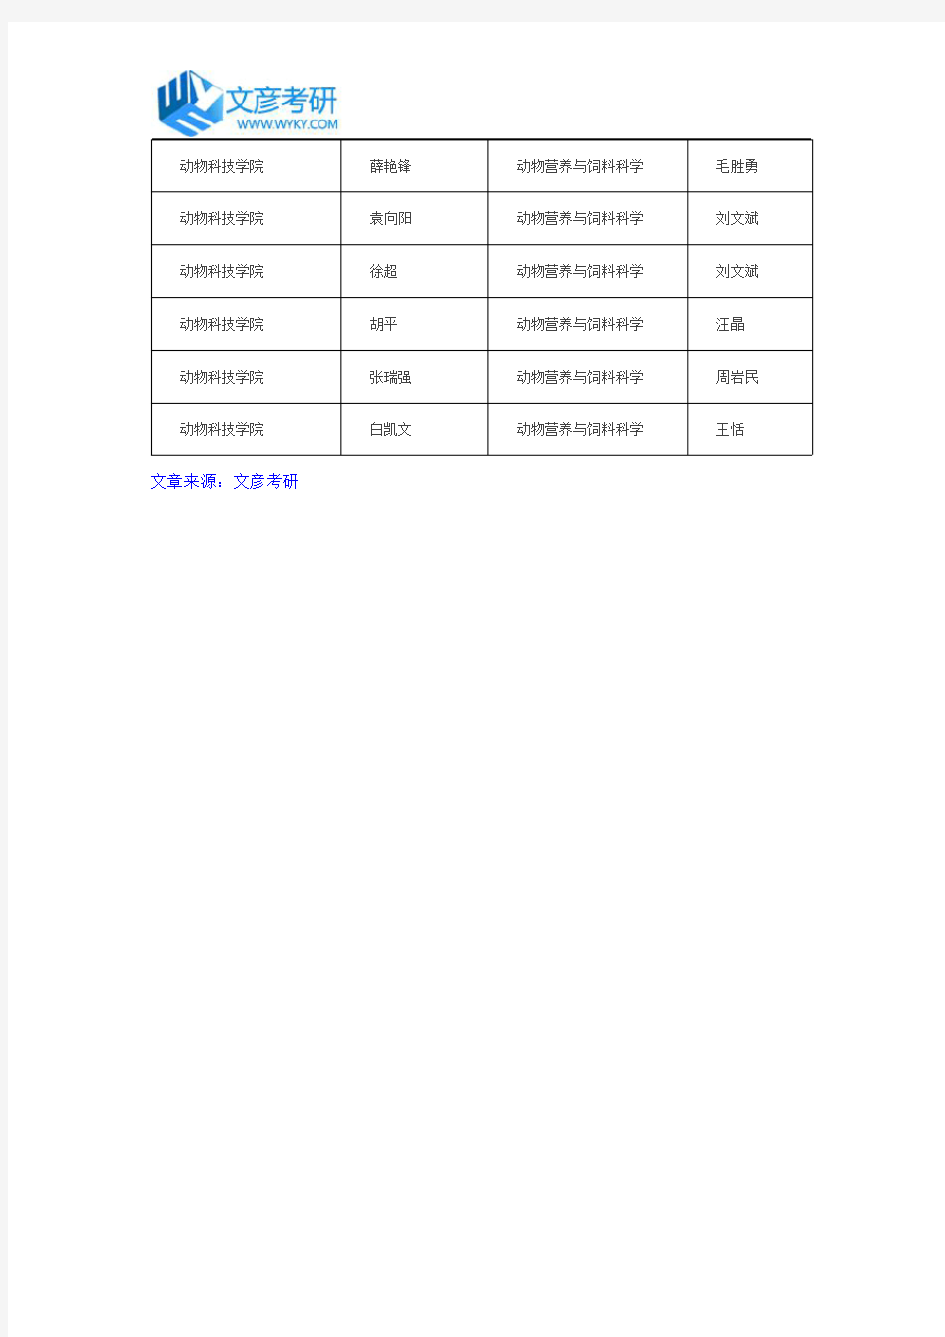 南京农业大学动物科技学院2016年博士拟录取名单